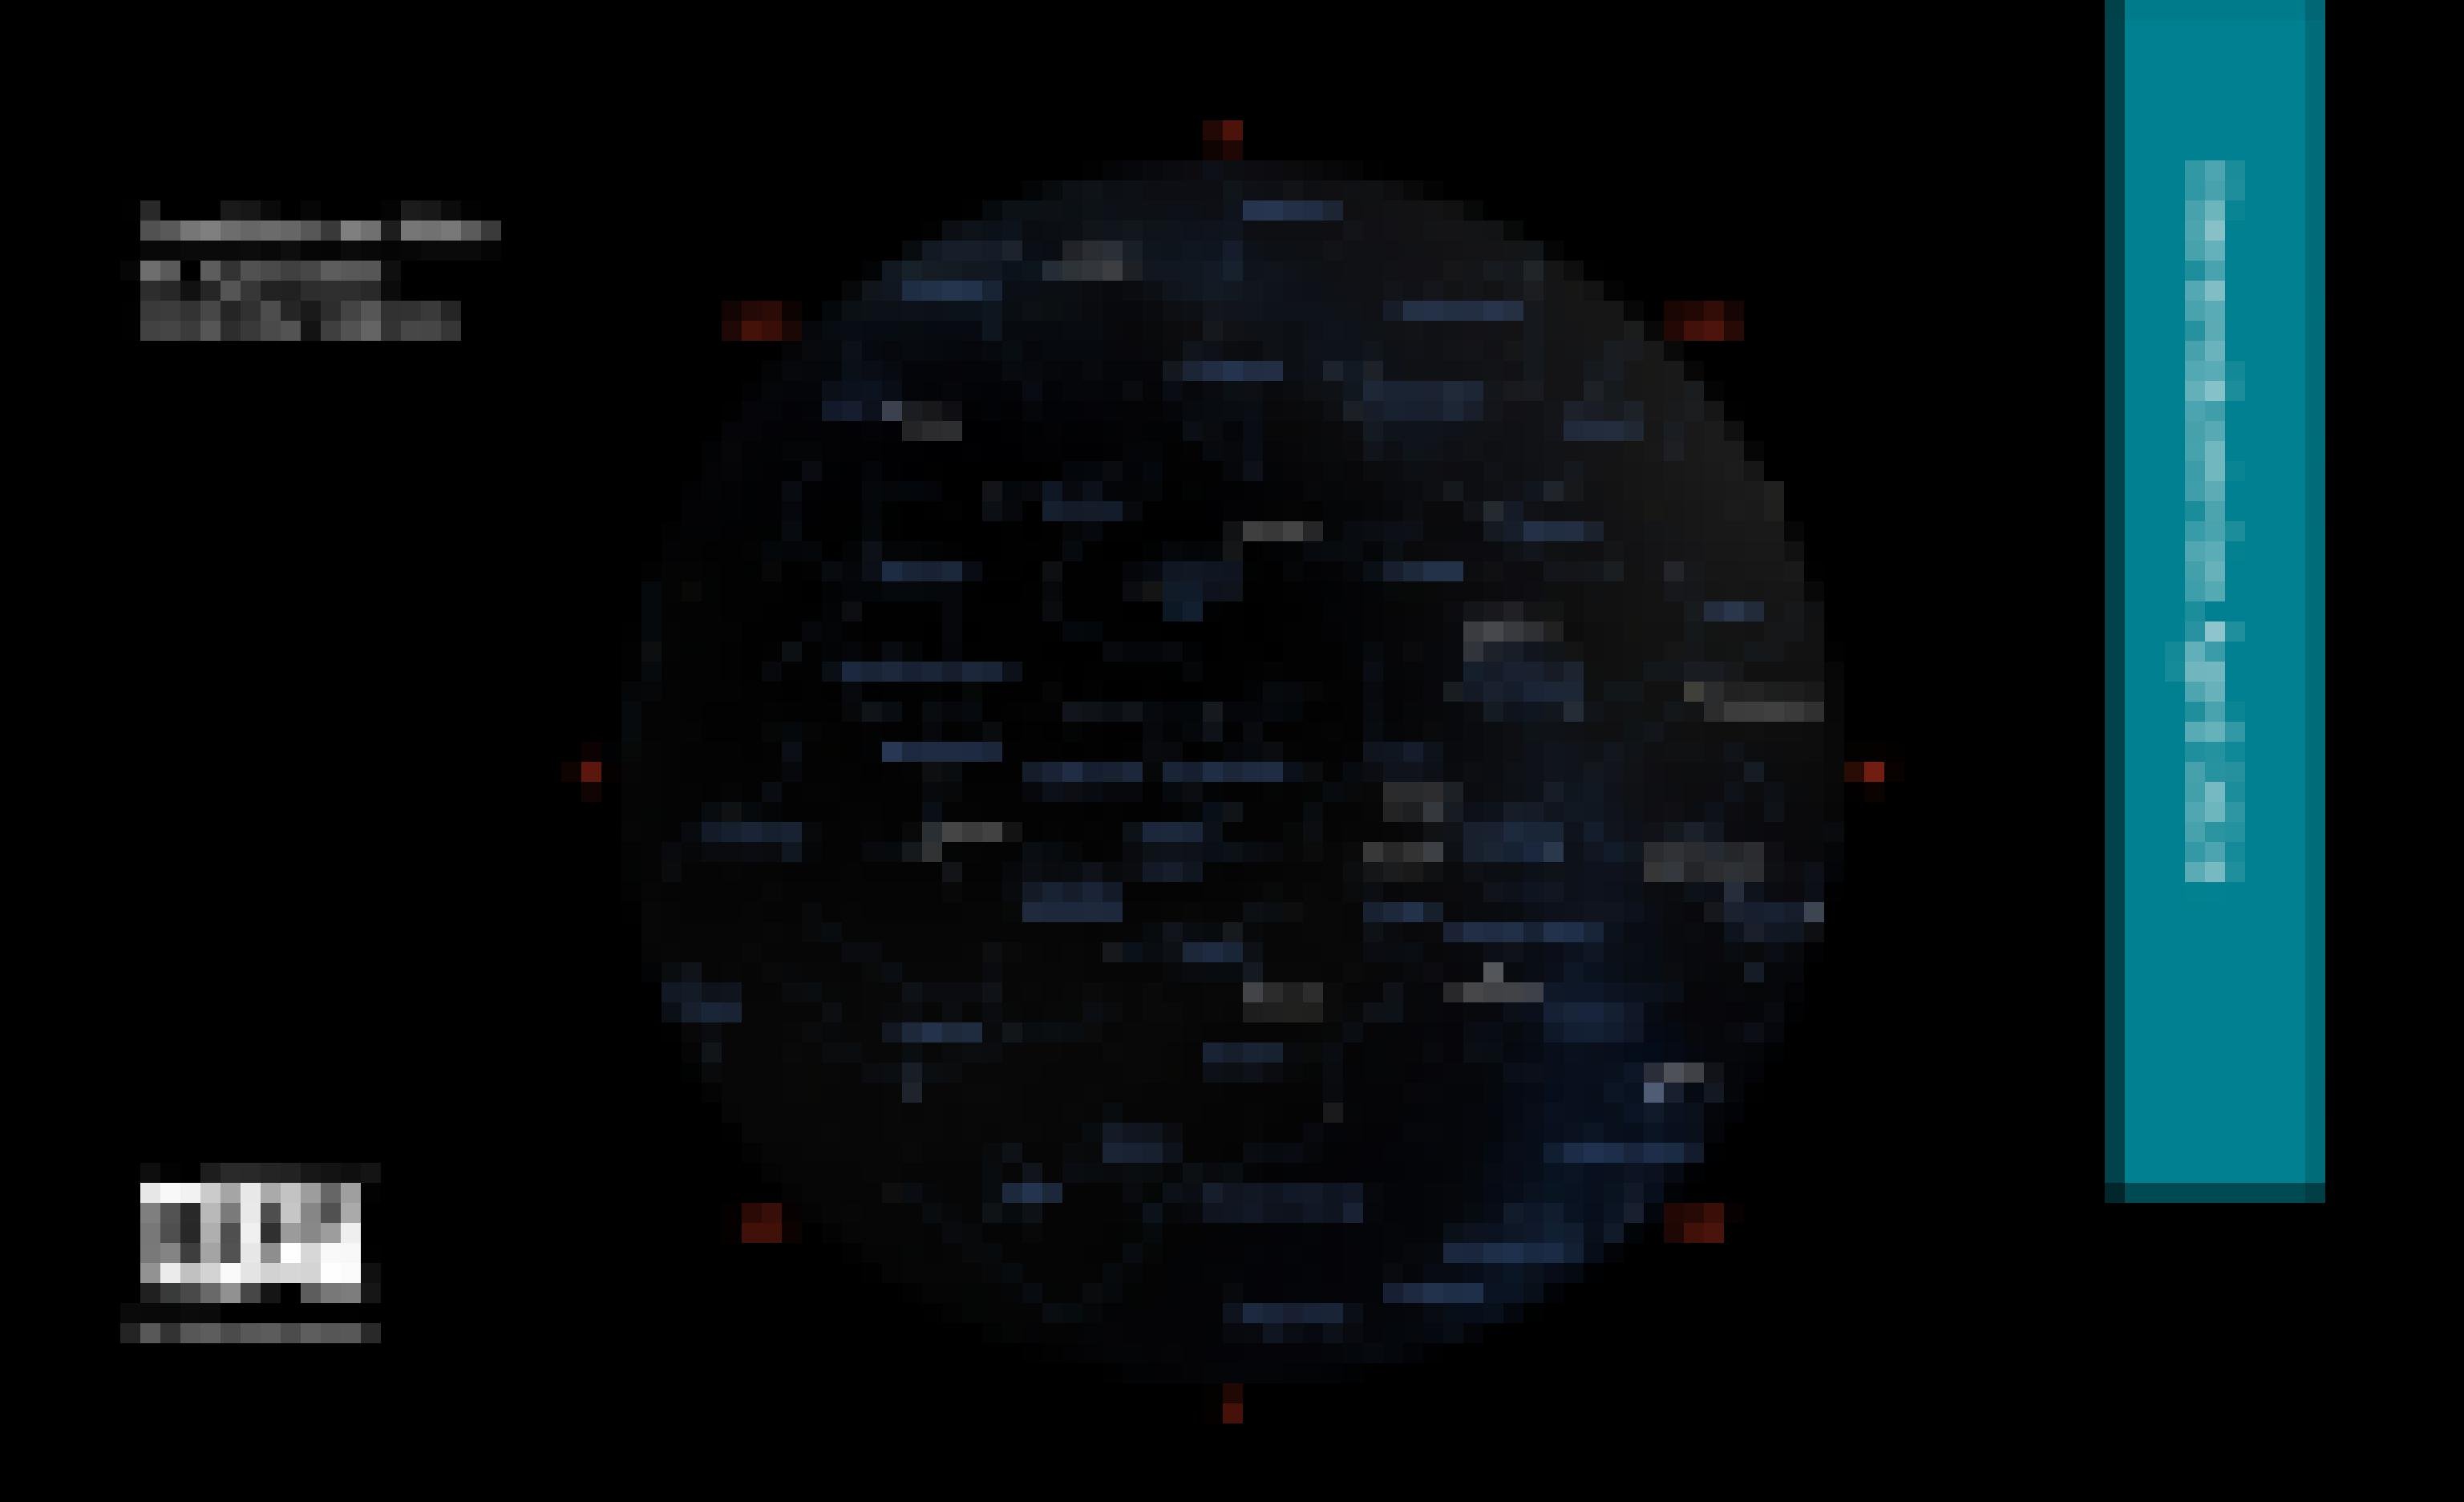 Eine Sternkarte zeigt die Position von Sternen und Planeten als helle Punkte vor dunklem Hintergrund für Anfang April 2024 gegen 23:00 Uhr MESZ für den Standort Frankfurt am Main.